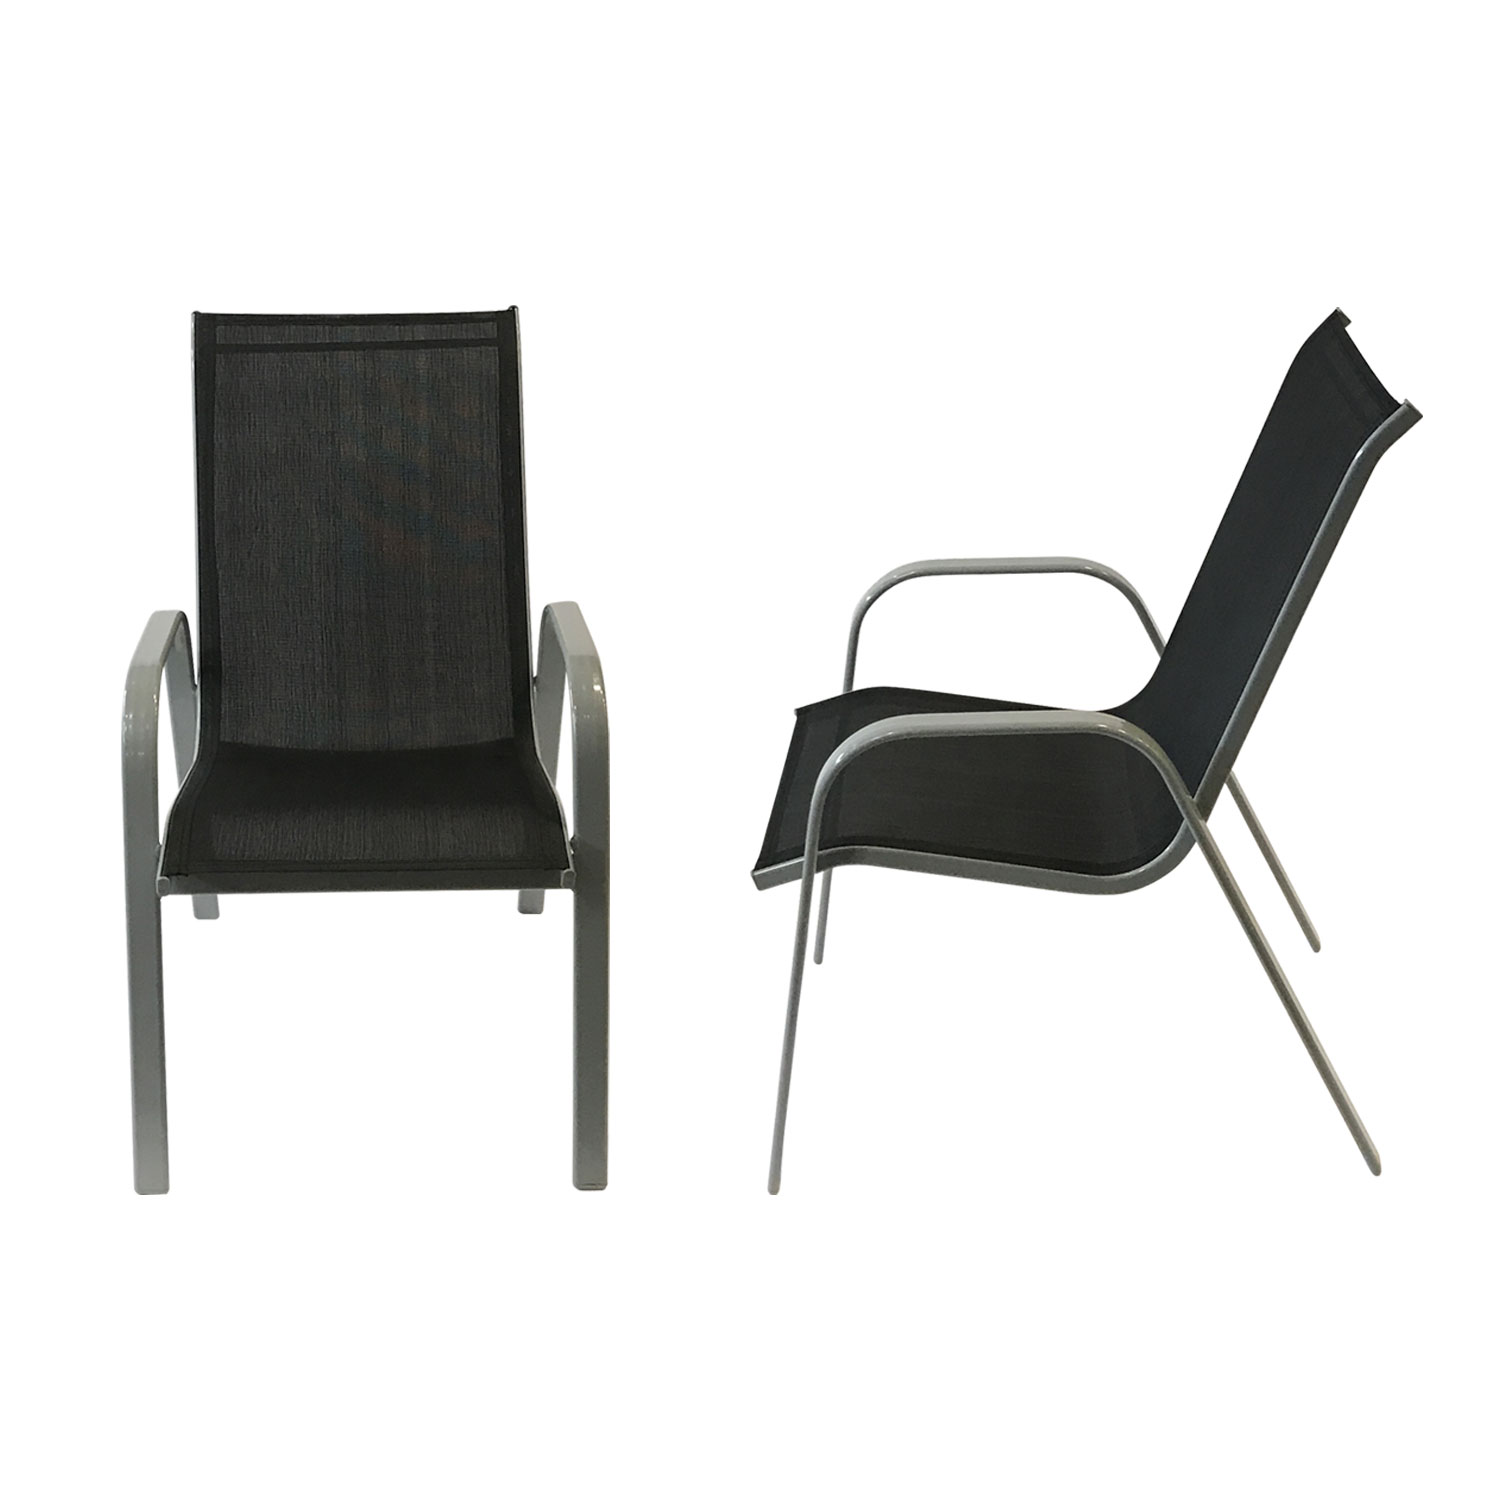 Set van 6 MARBELLA stoelen in zwart textilene - grijs aluminium